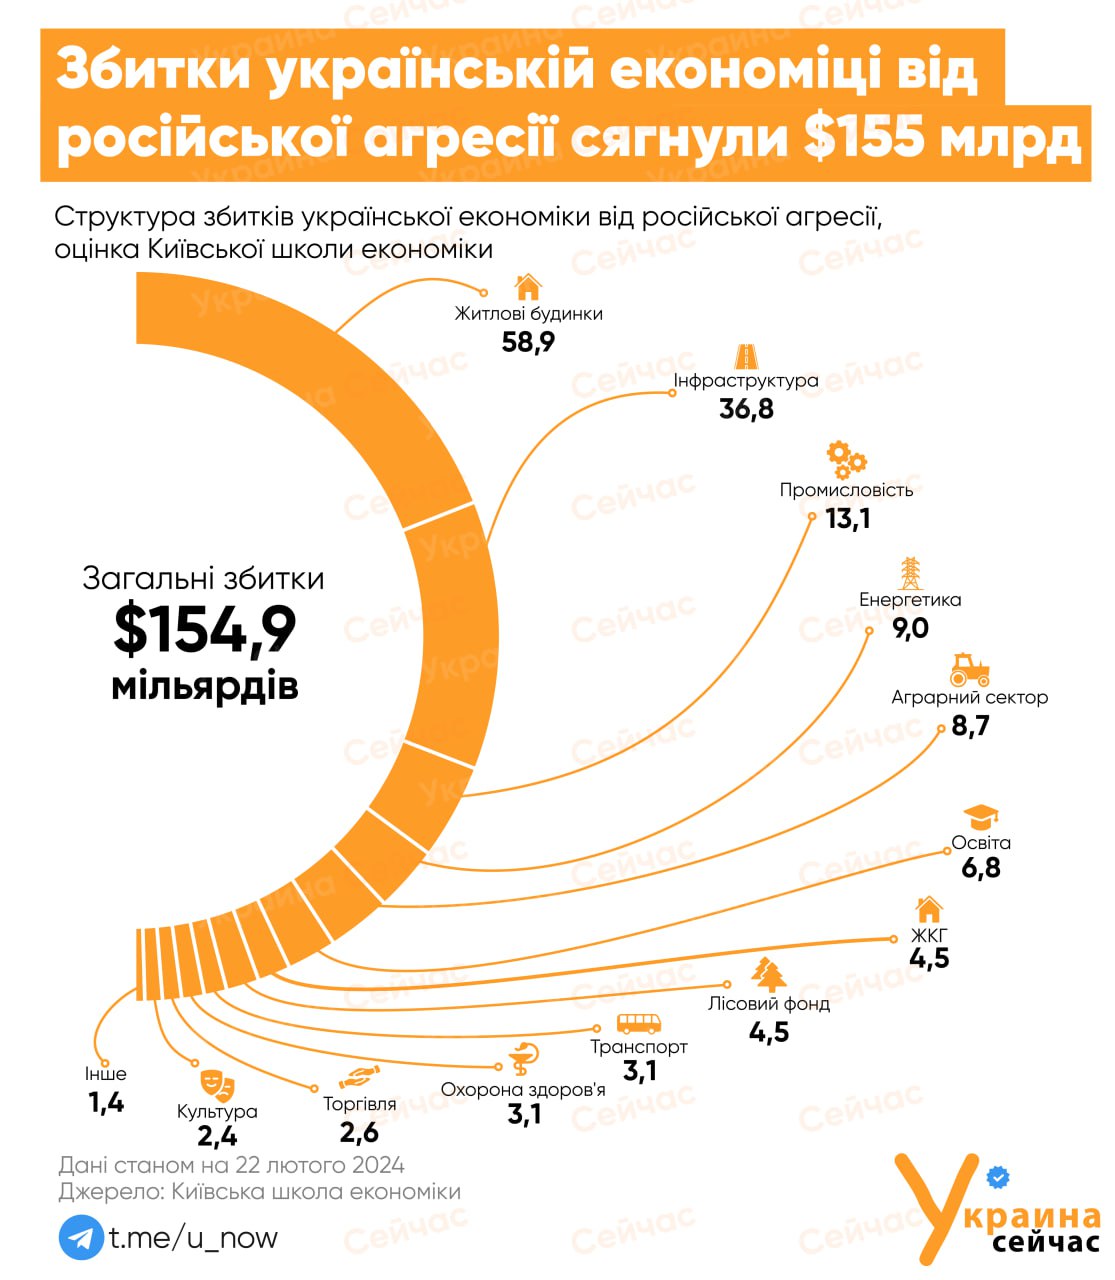 На восстановление Украины потребуется $486 млрд в течение следующего десятилетия - ИНФОГРАФИКА